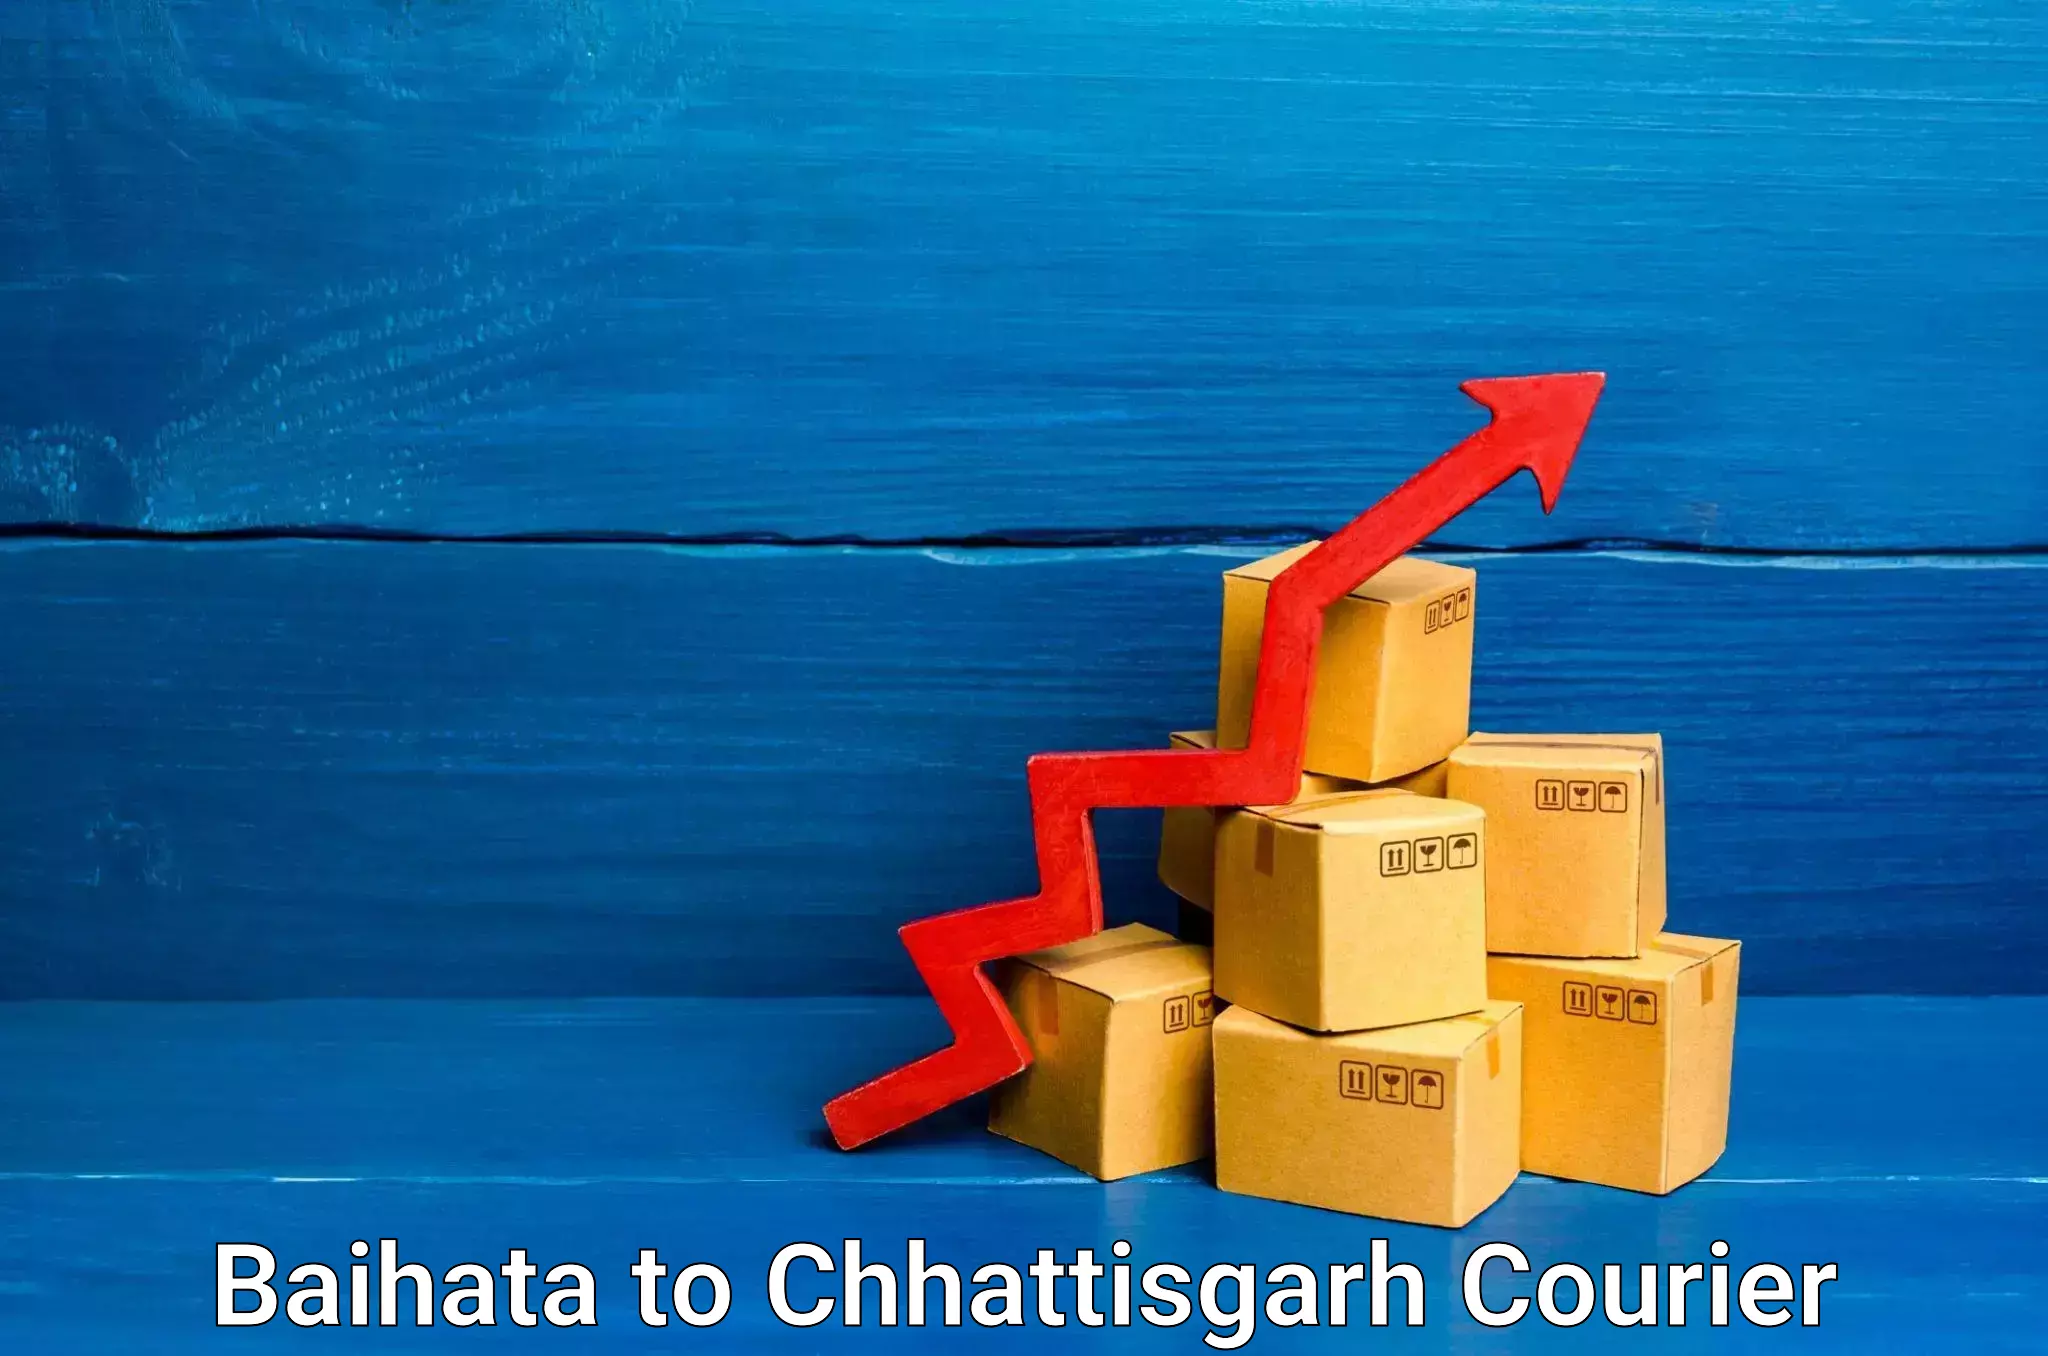 Overnight delivery services Baihata to Patna Chhattisgarh